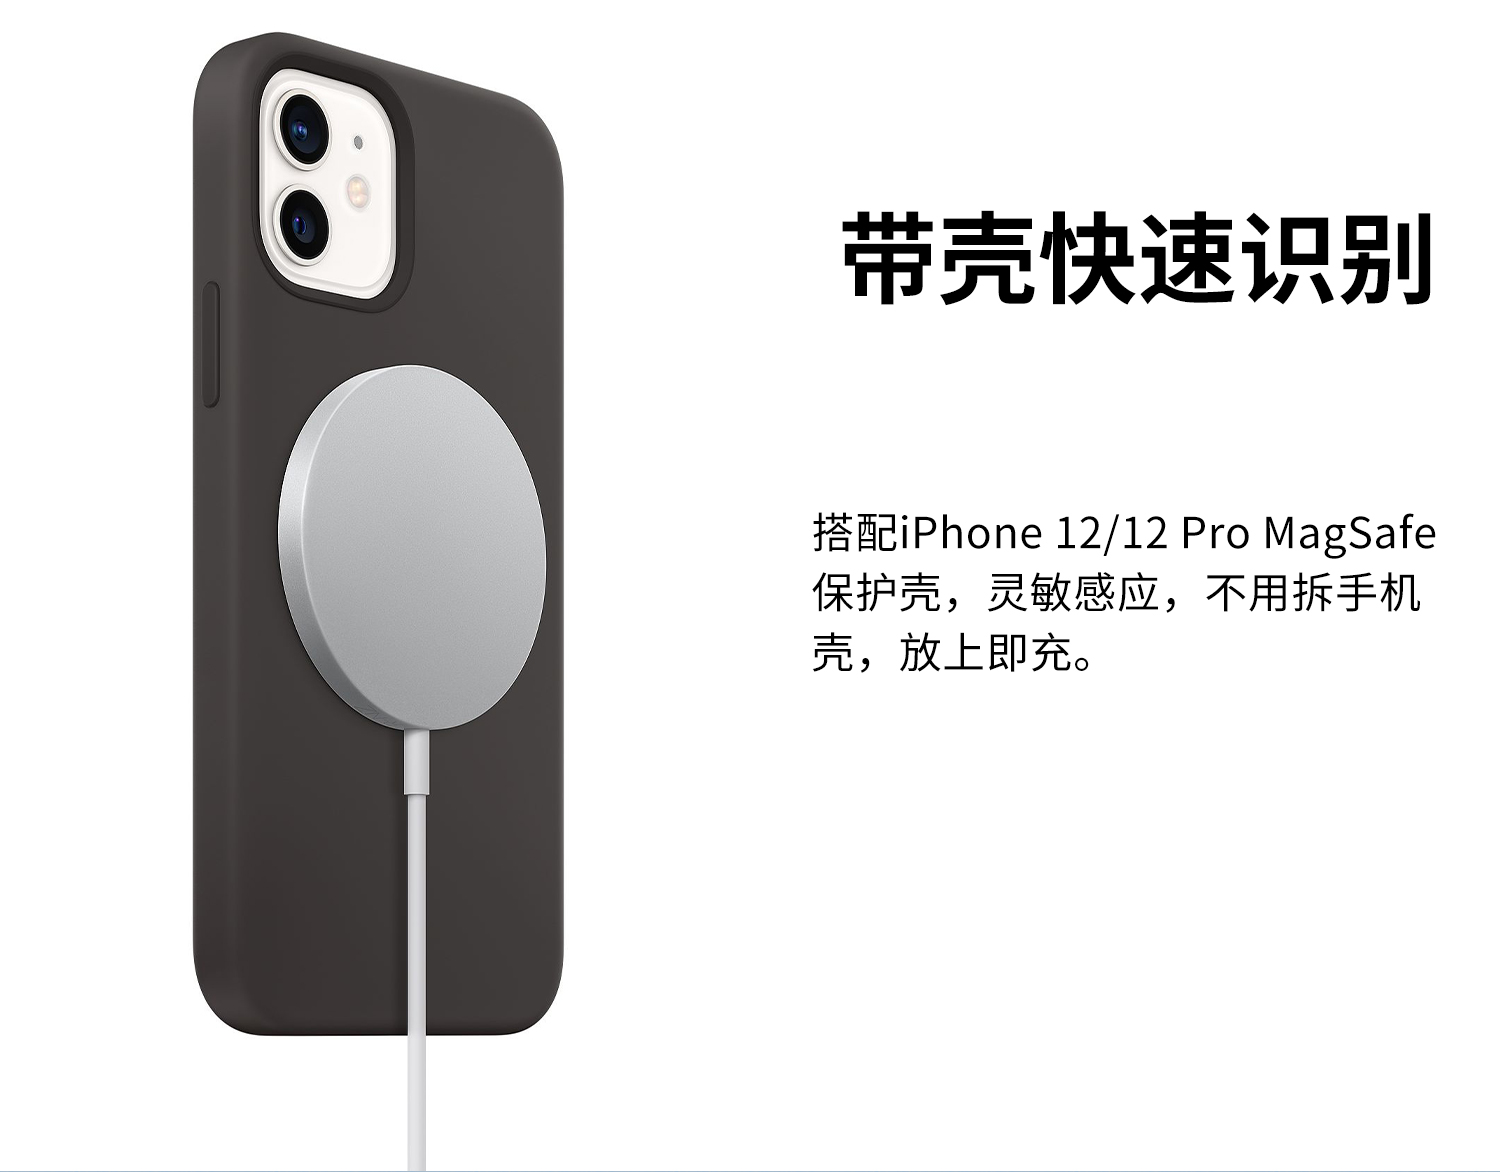 手机 iPhone13pro 256GB 银色+Apple MagSafe 磁吸无线充电器【价格 图片 品牌 报价】-苏宁易购宜博士旗舰店